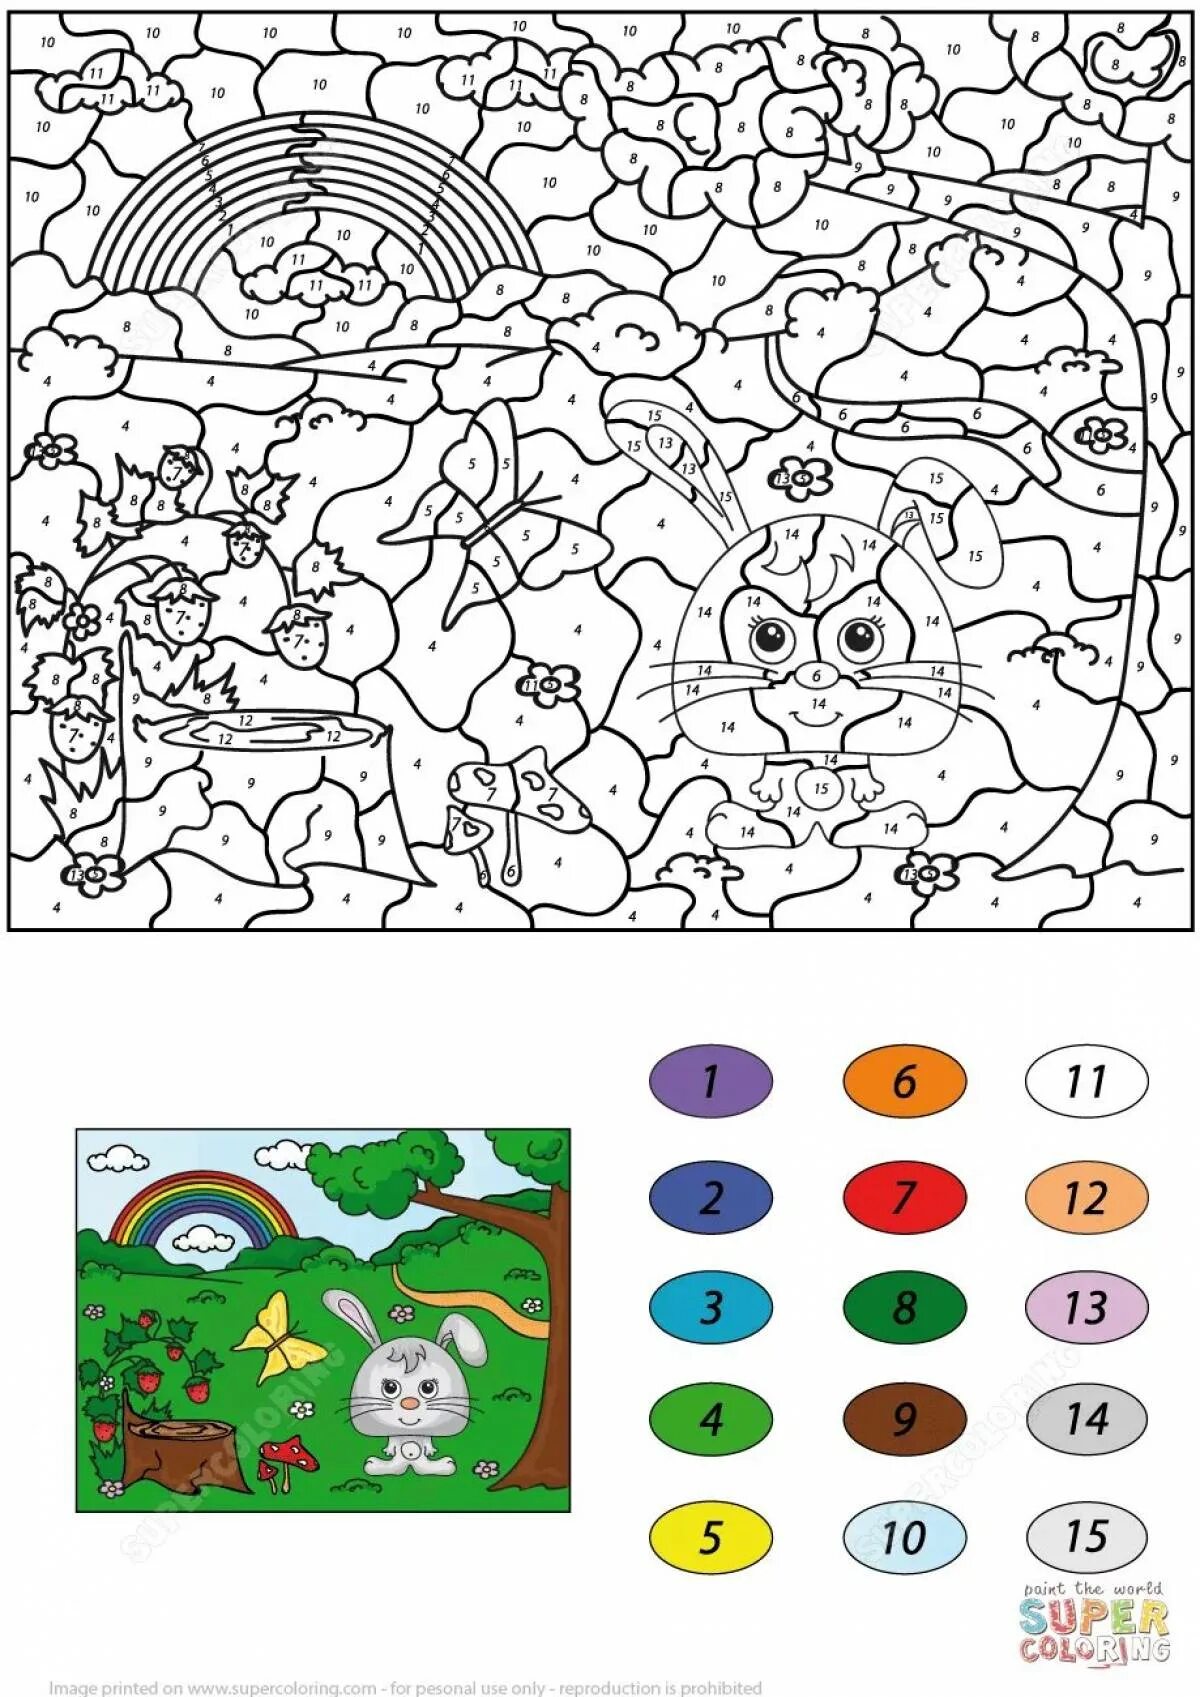 Игра разрисовывать. Раскрашивание по номерам для детей. Раскрашивание по цветам. Раскраска по номерам для детей. Разукрасить по цветам.